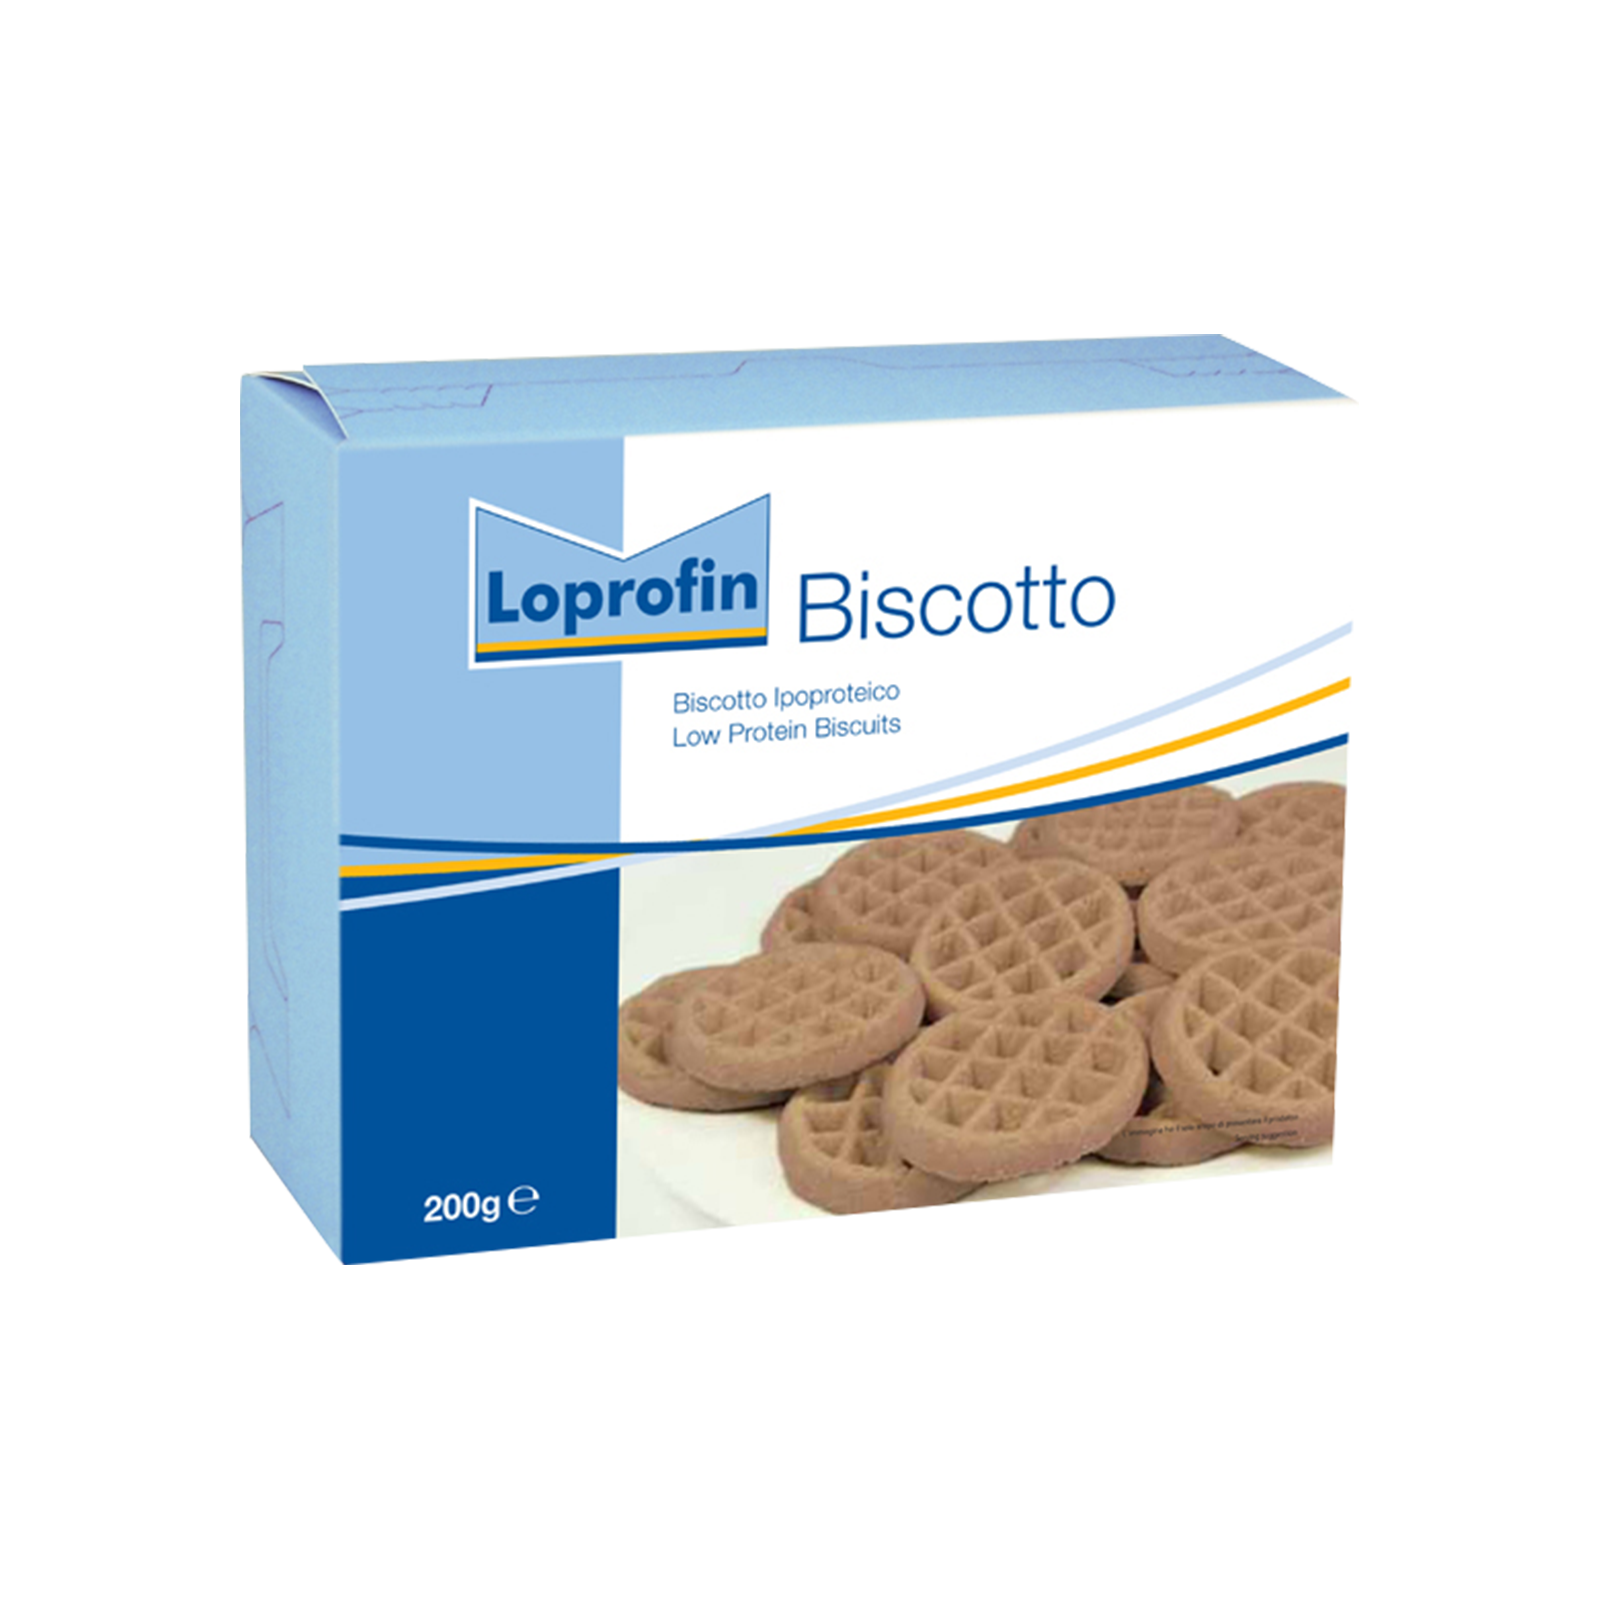 Loprofin Biscotto scatola da 200g | Nutricia